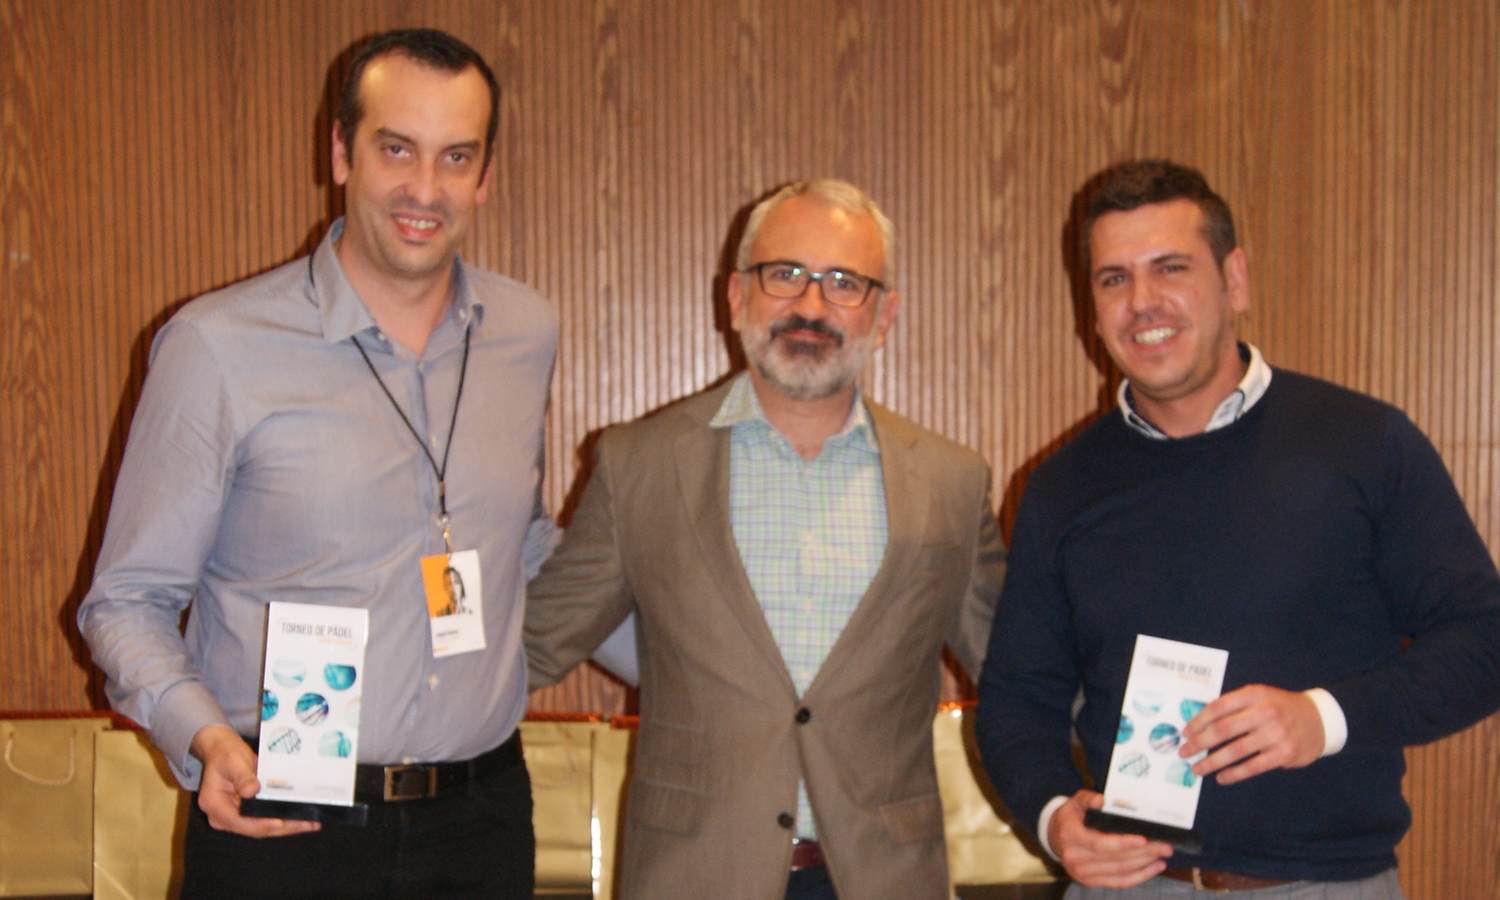 Los finalistas de la categoría masculina, Quim Lloveras y Rafael Salcedo, junto al Director General de Conversia, Alfonso Corral durante la Convención 2018 de Conversia